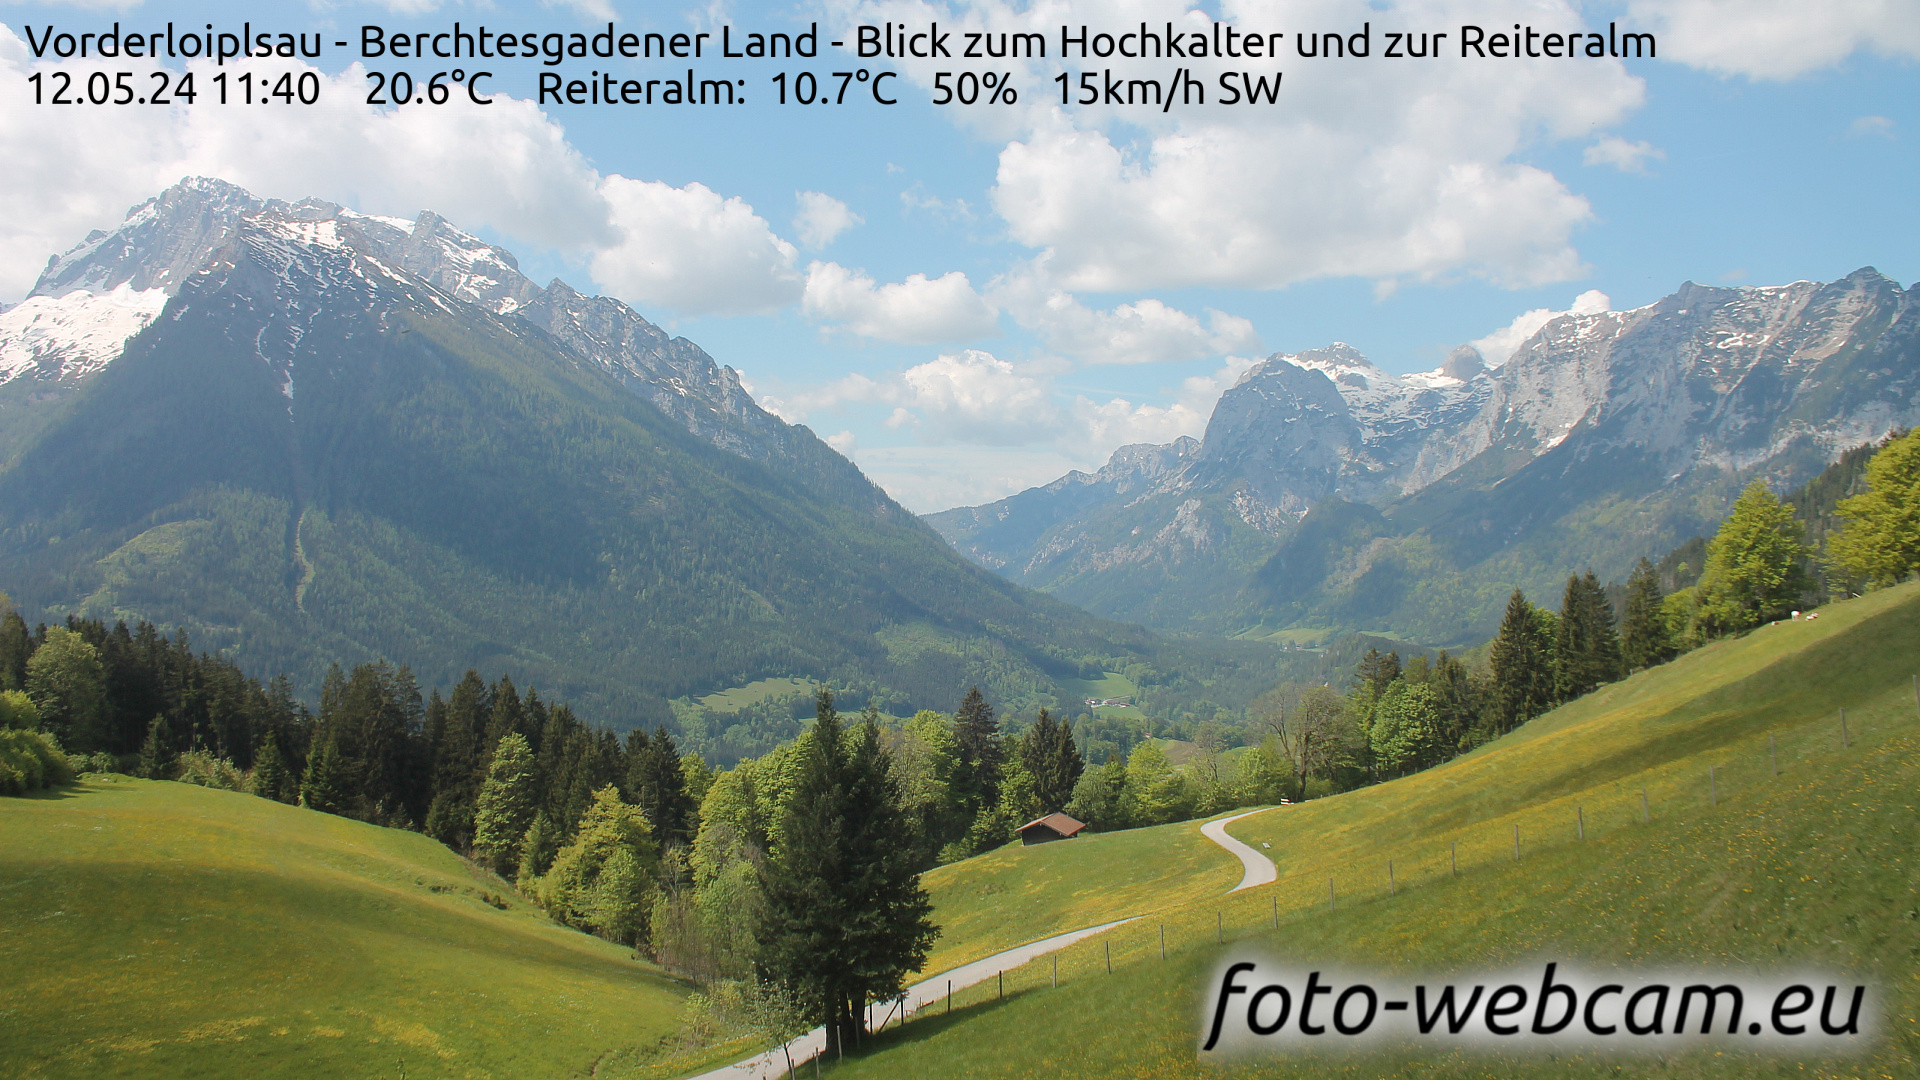 Ramsau bei Berchtesgaden Thu. 11:48